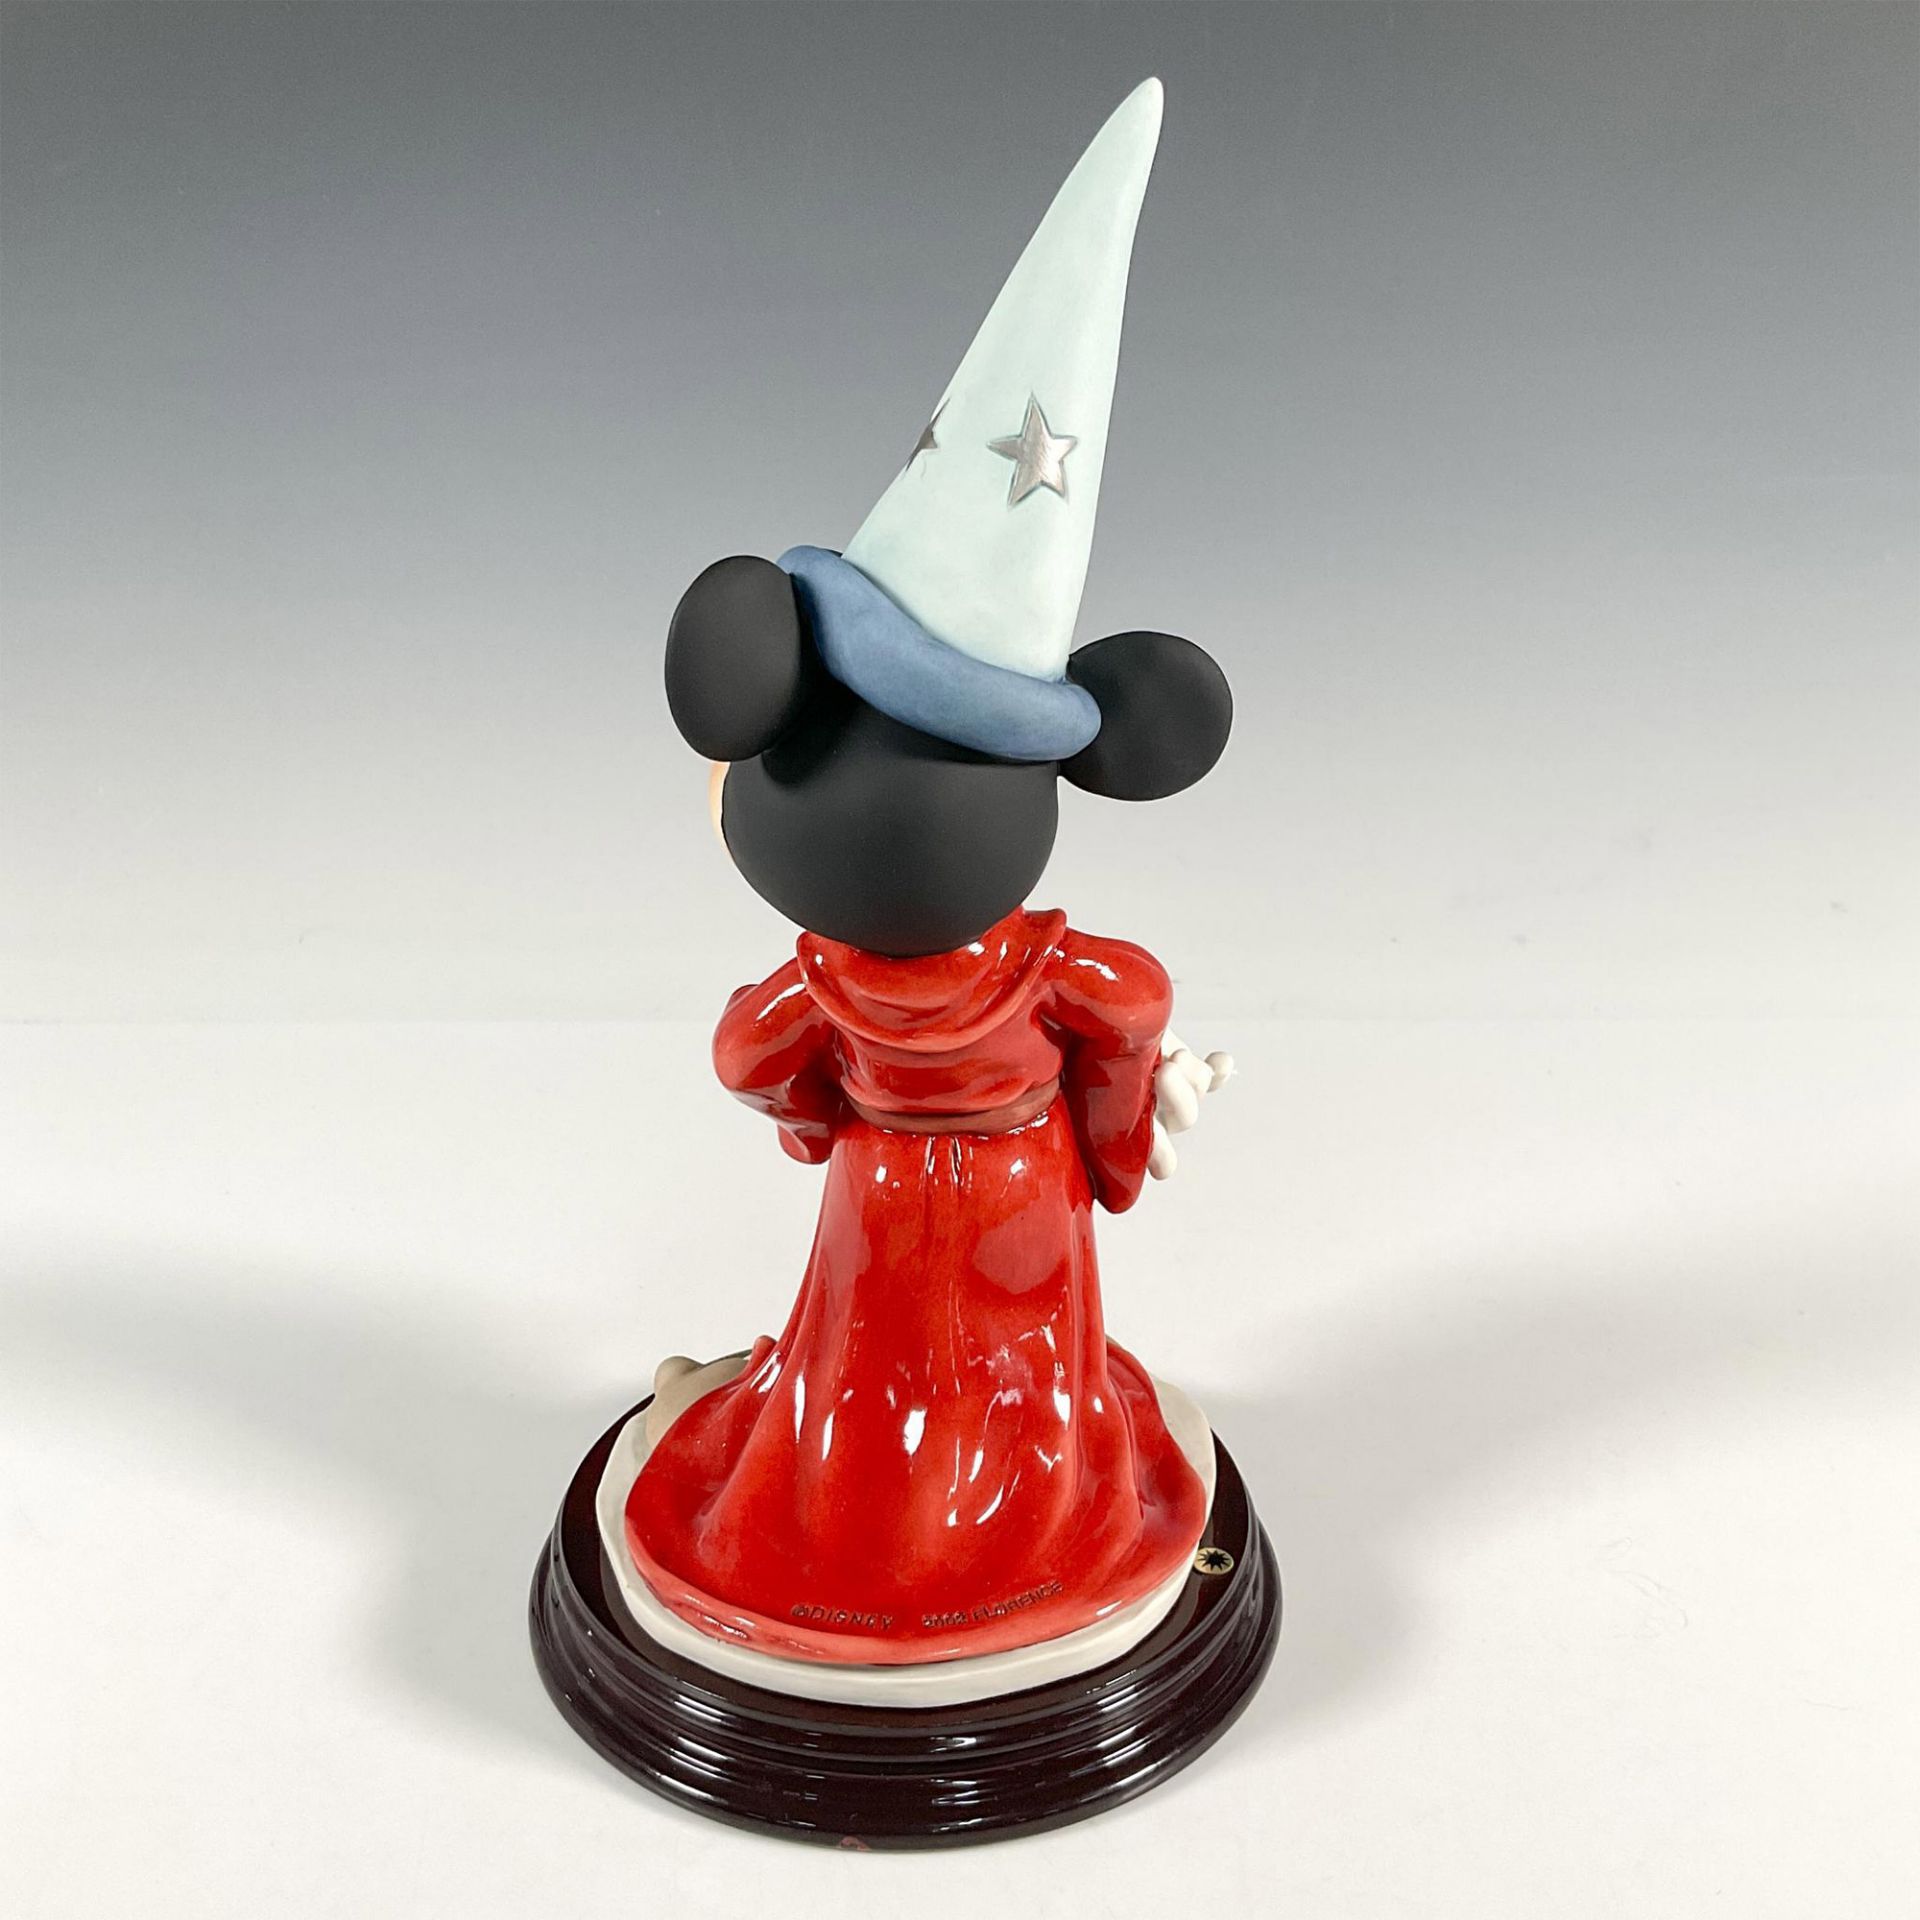 Florence Giuseppe Armani Disney Figure, Sorcerers Apprentice - Image 2 of 4